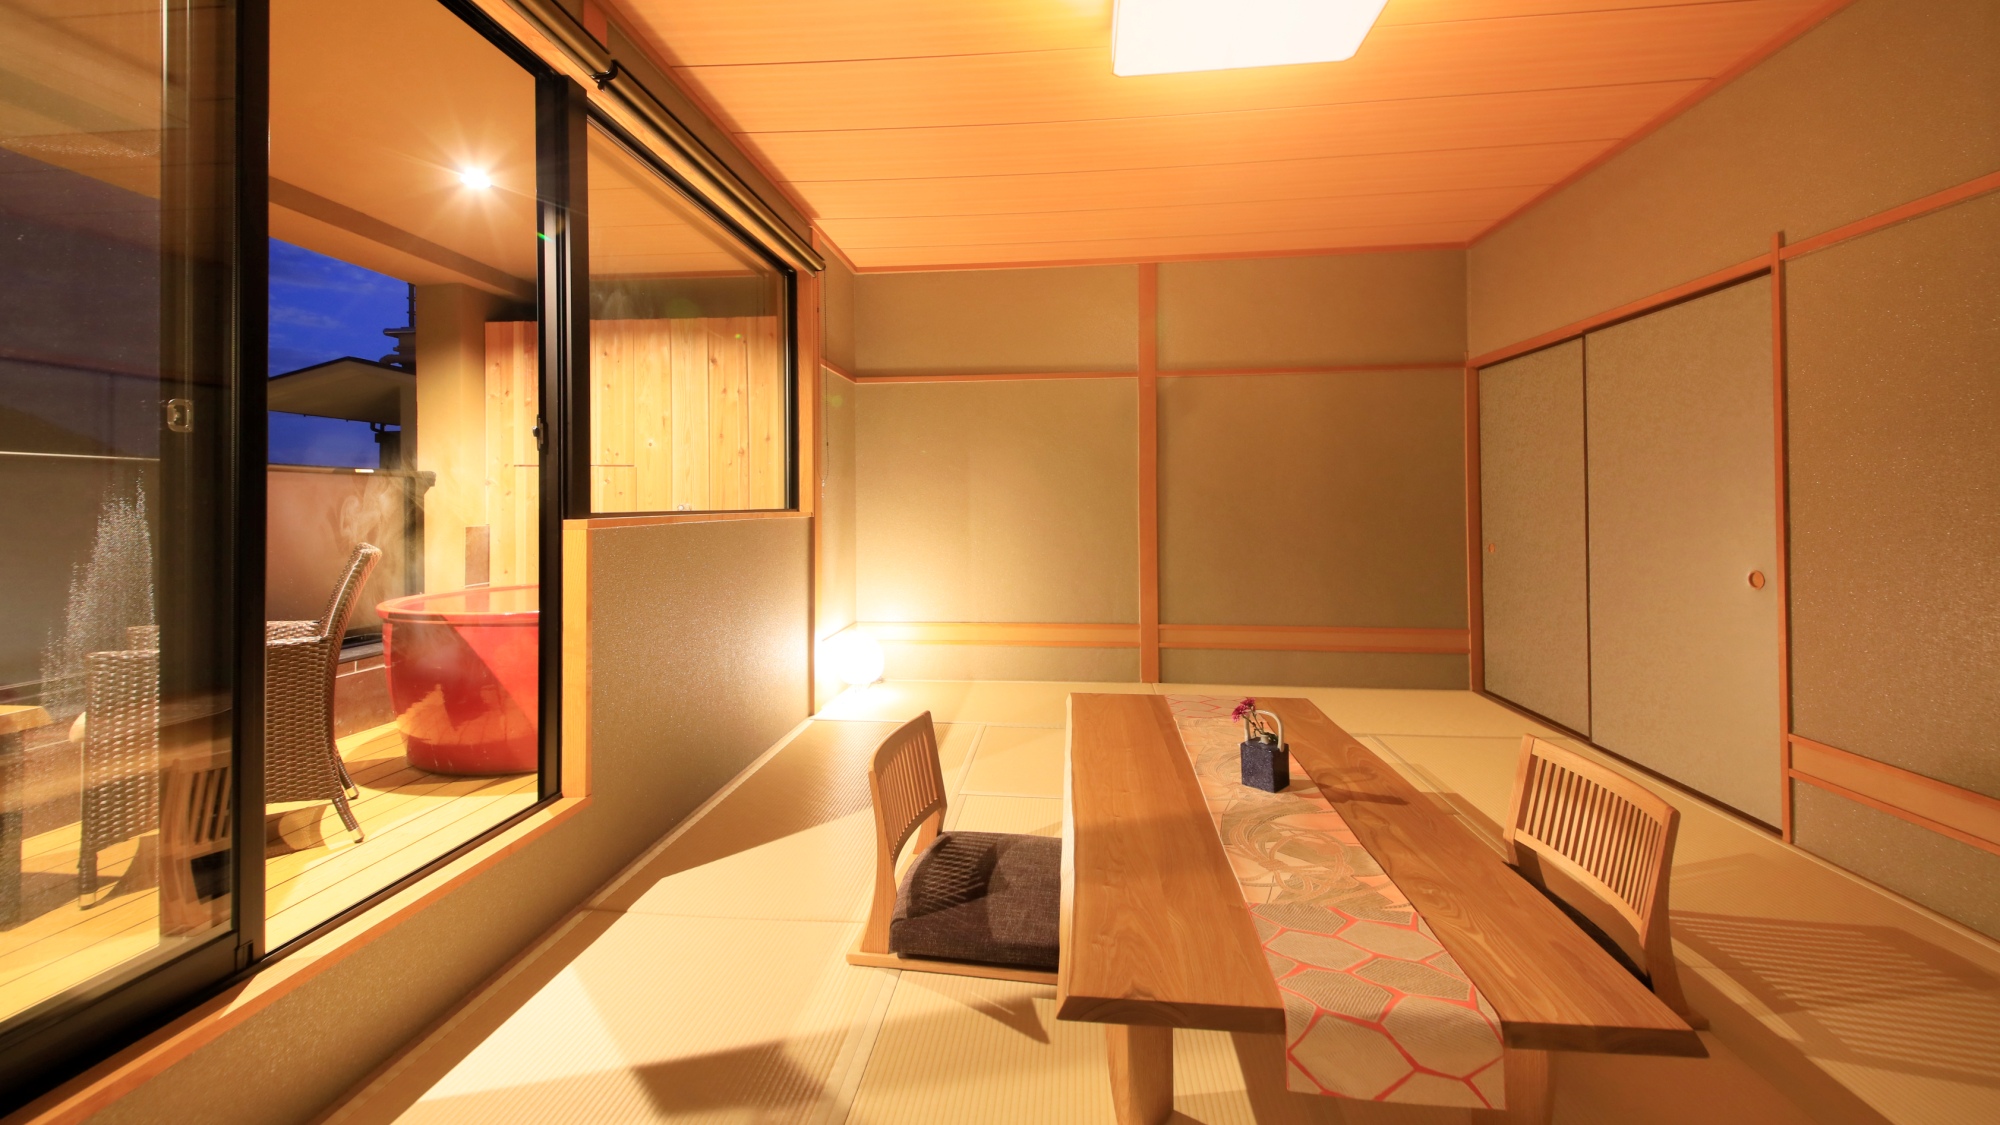 【露天風呂付き和室12畳】純和風の和室タイプの客室